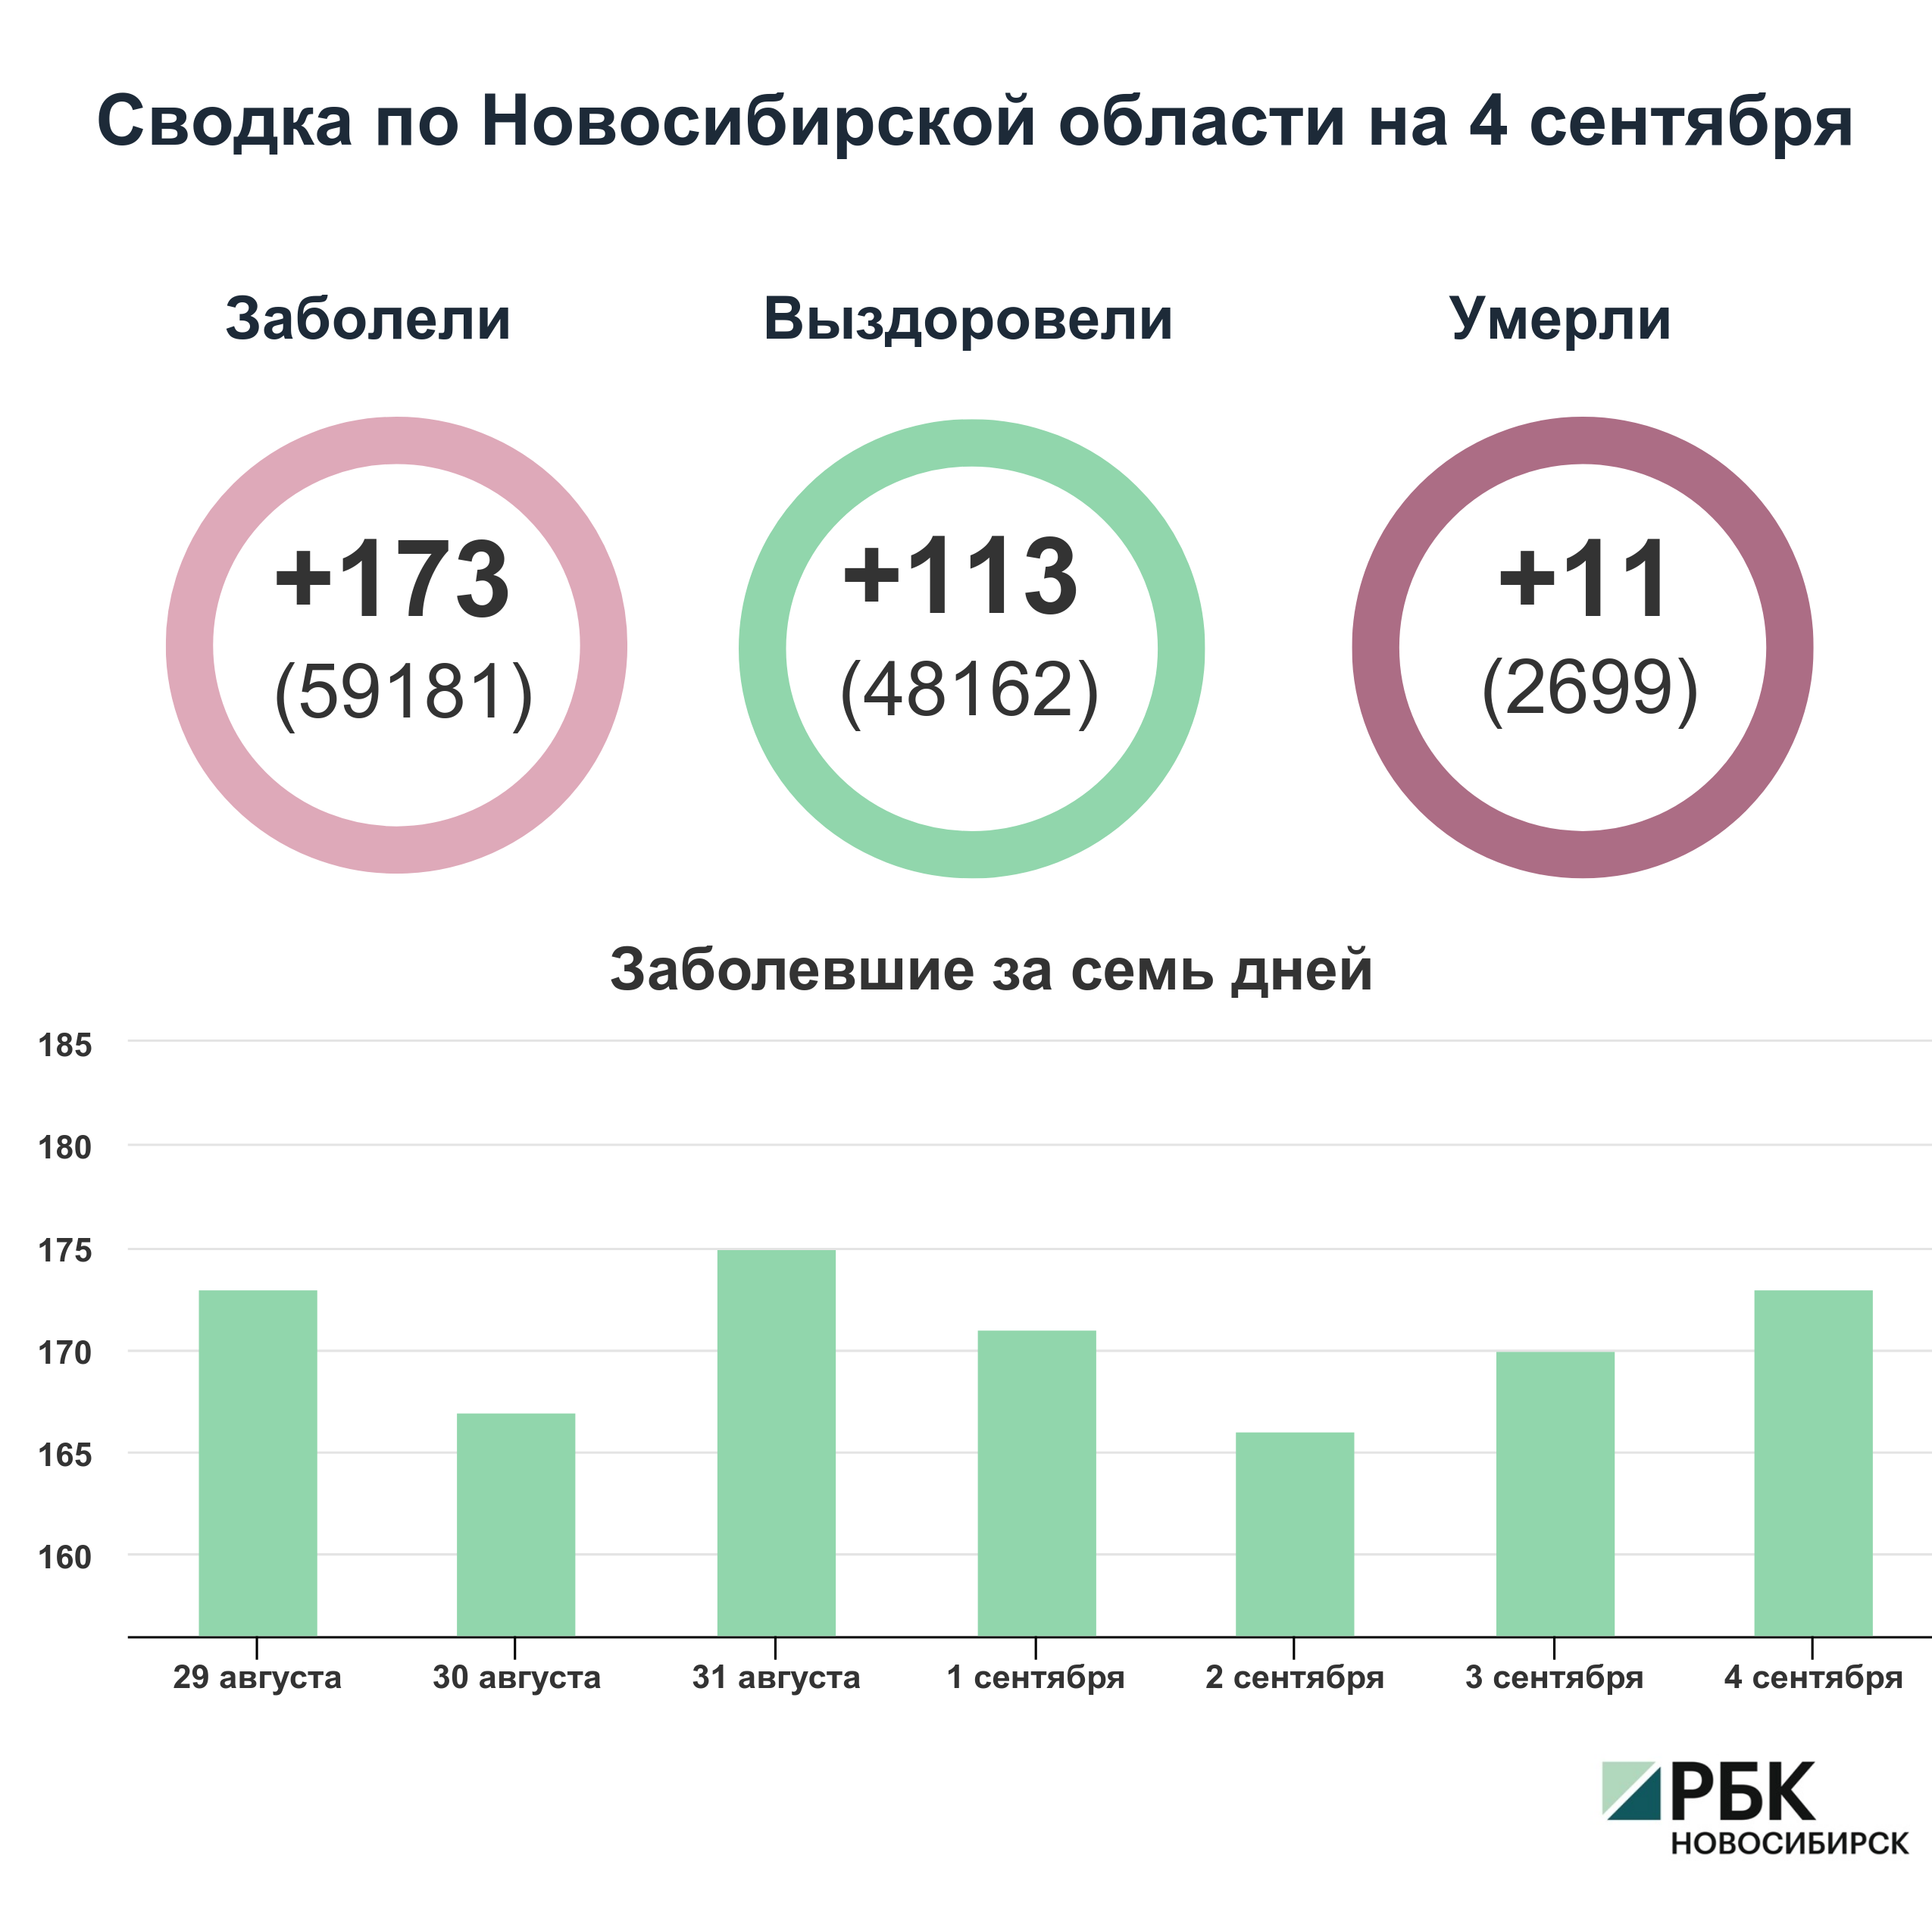 Коронавирус в Новосибирске: сводка на 4 сентября